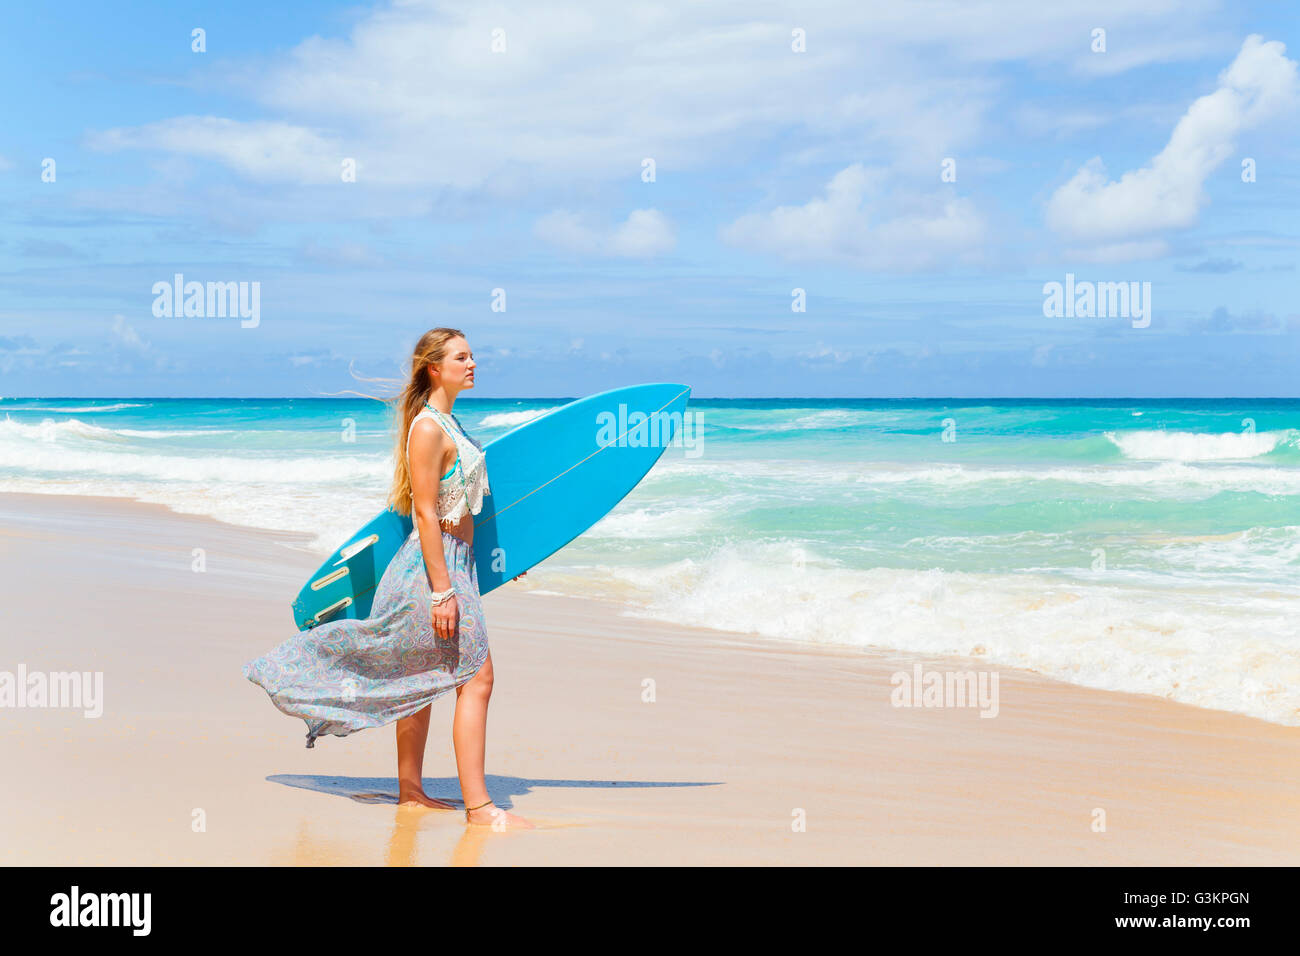 Young woman carrying surfboard on beach, la République dominicaine, les Caraïbes Banque D'Images